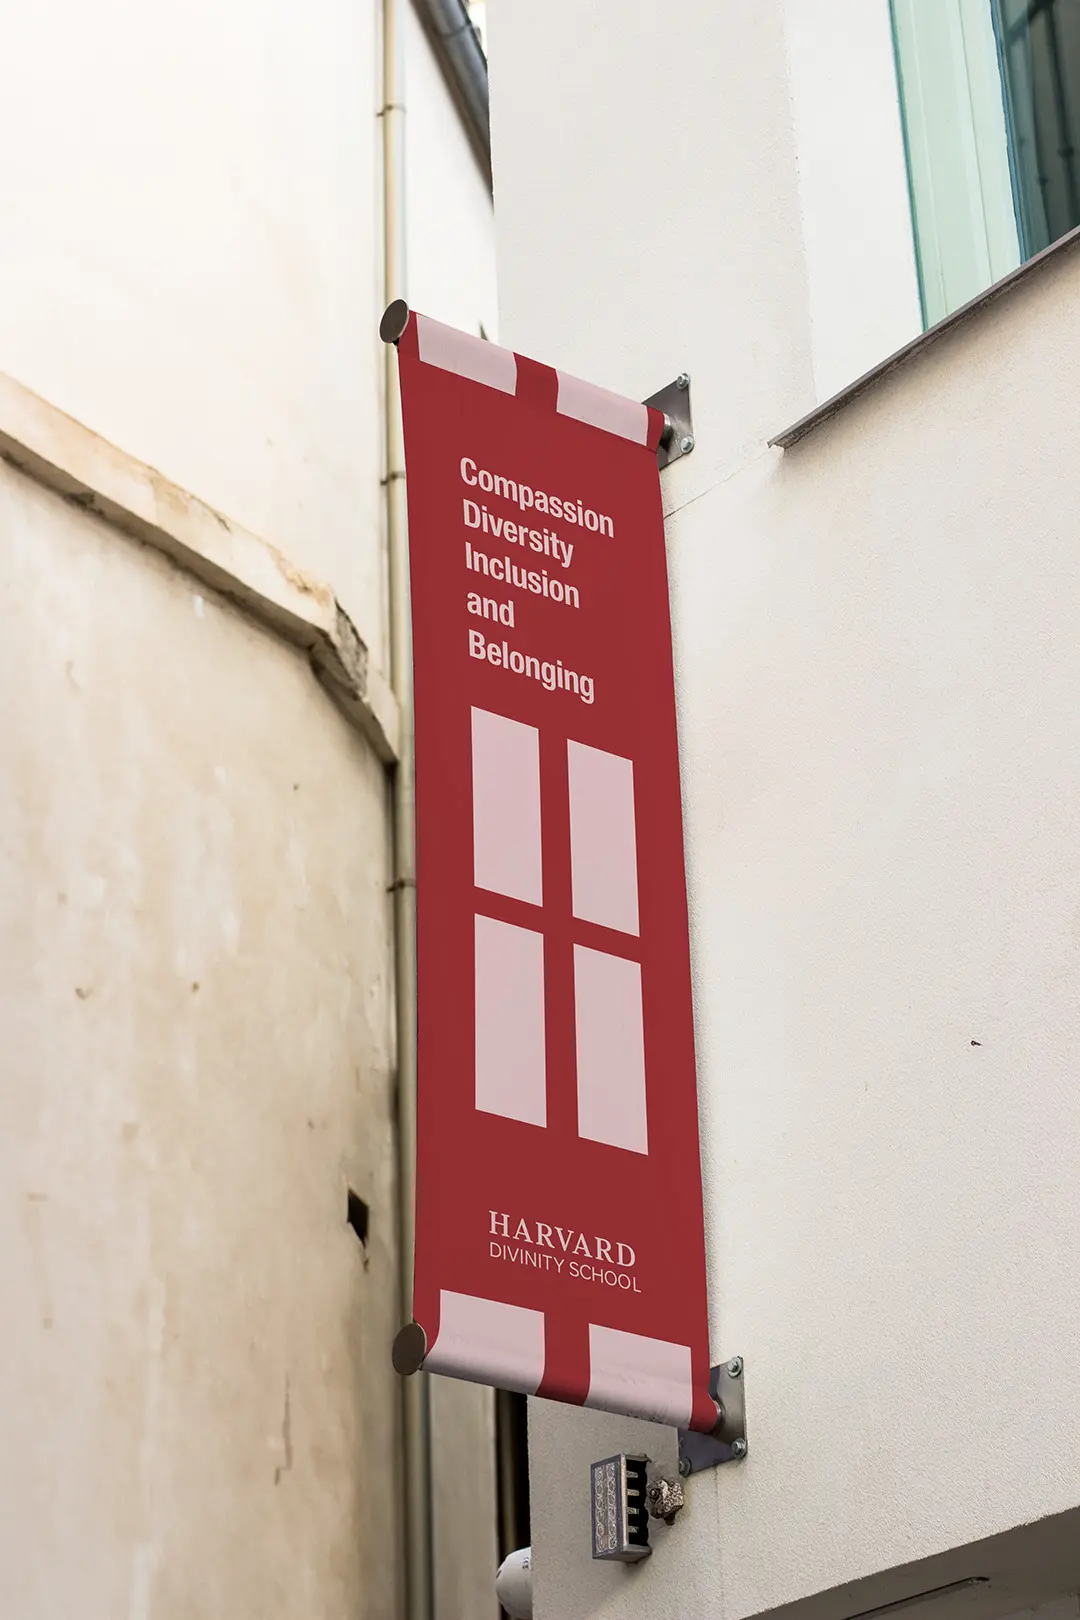 Harvard-Divinity-School-mockup-signage-01